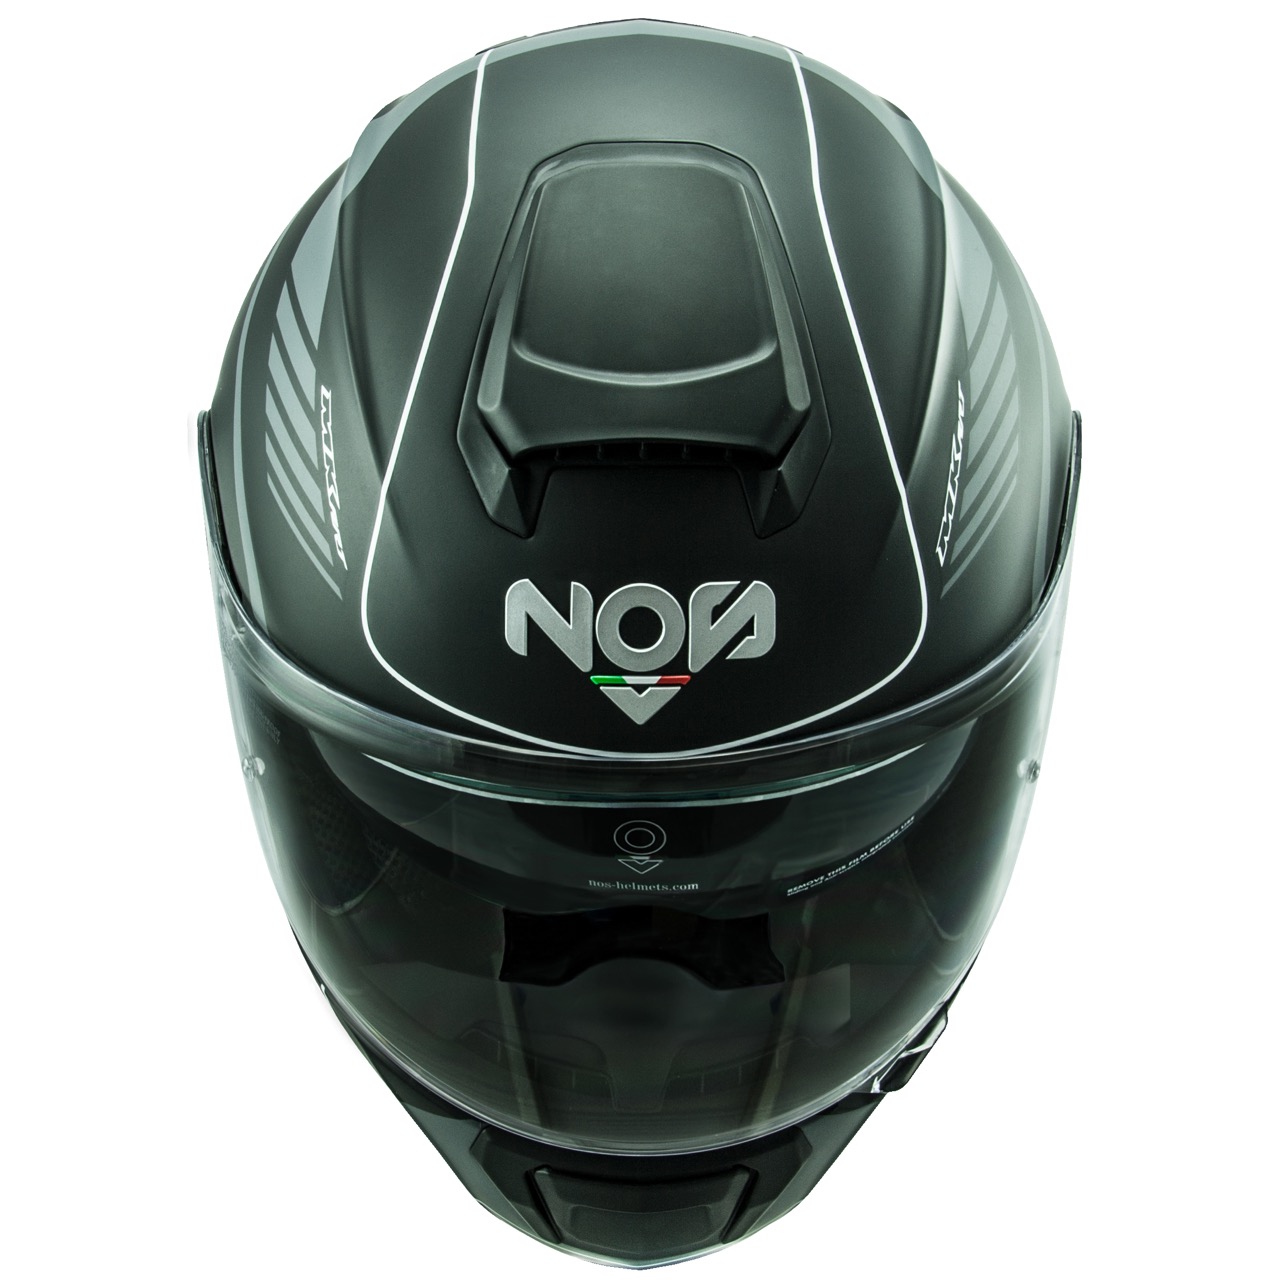 NOS NS-6 Cayman Matt - foto del casco 